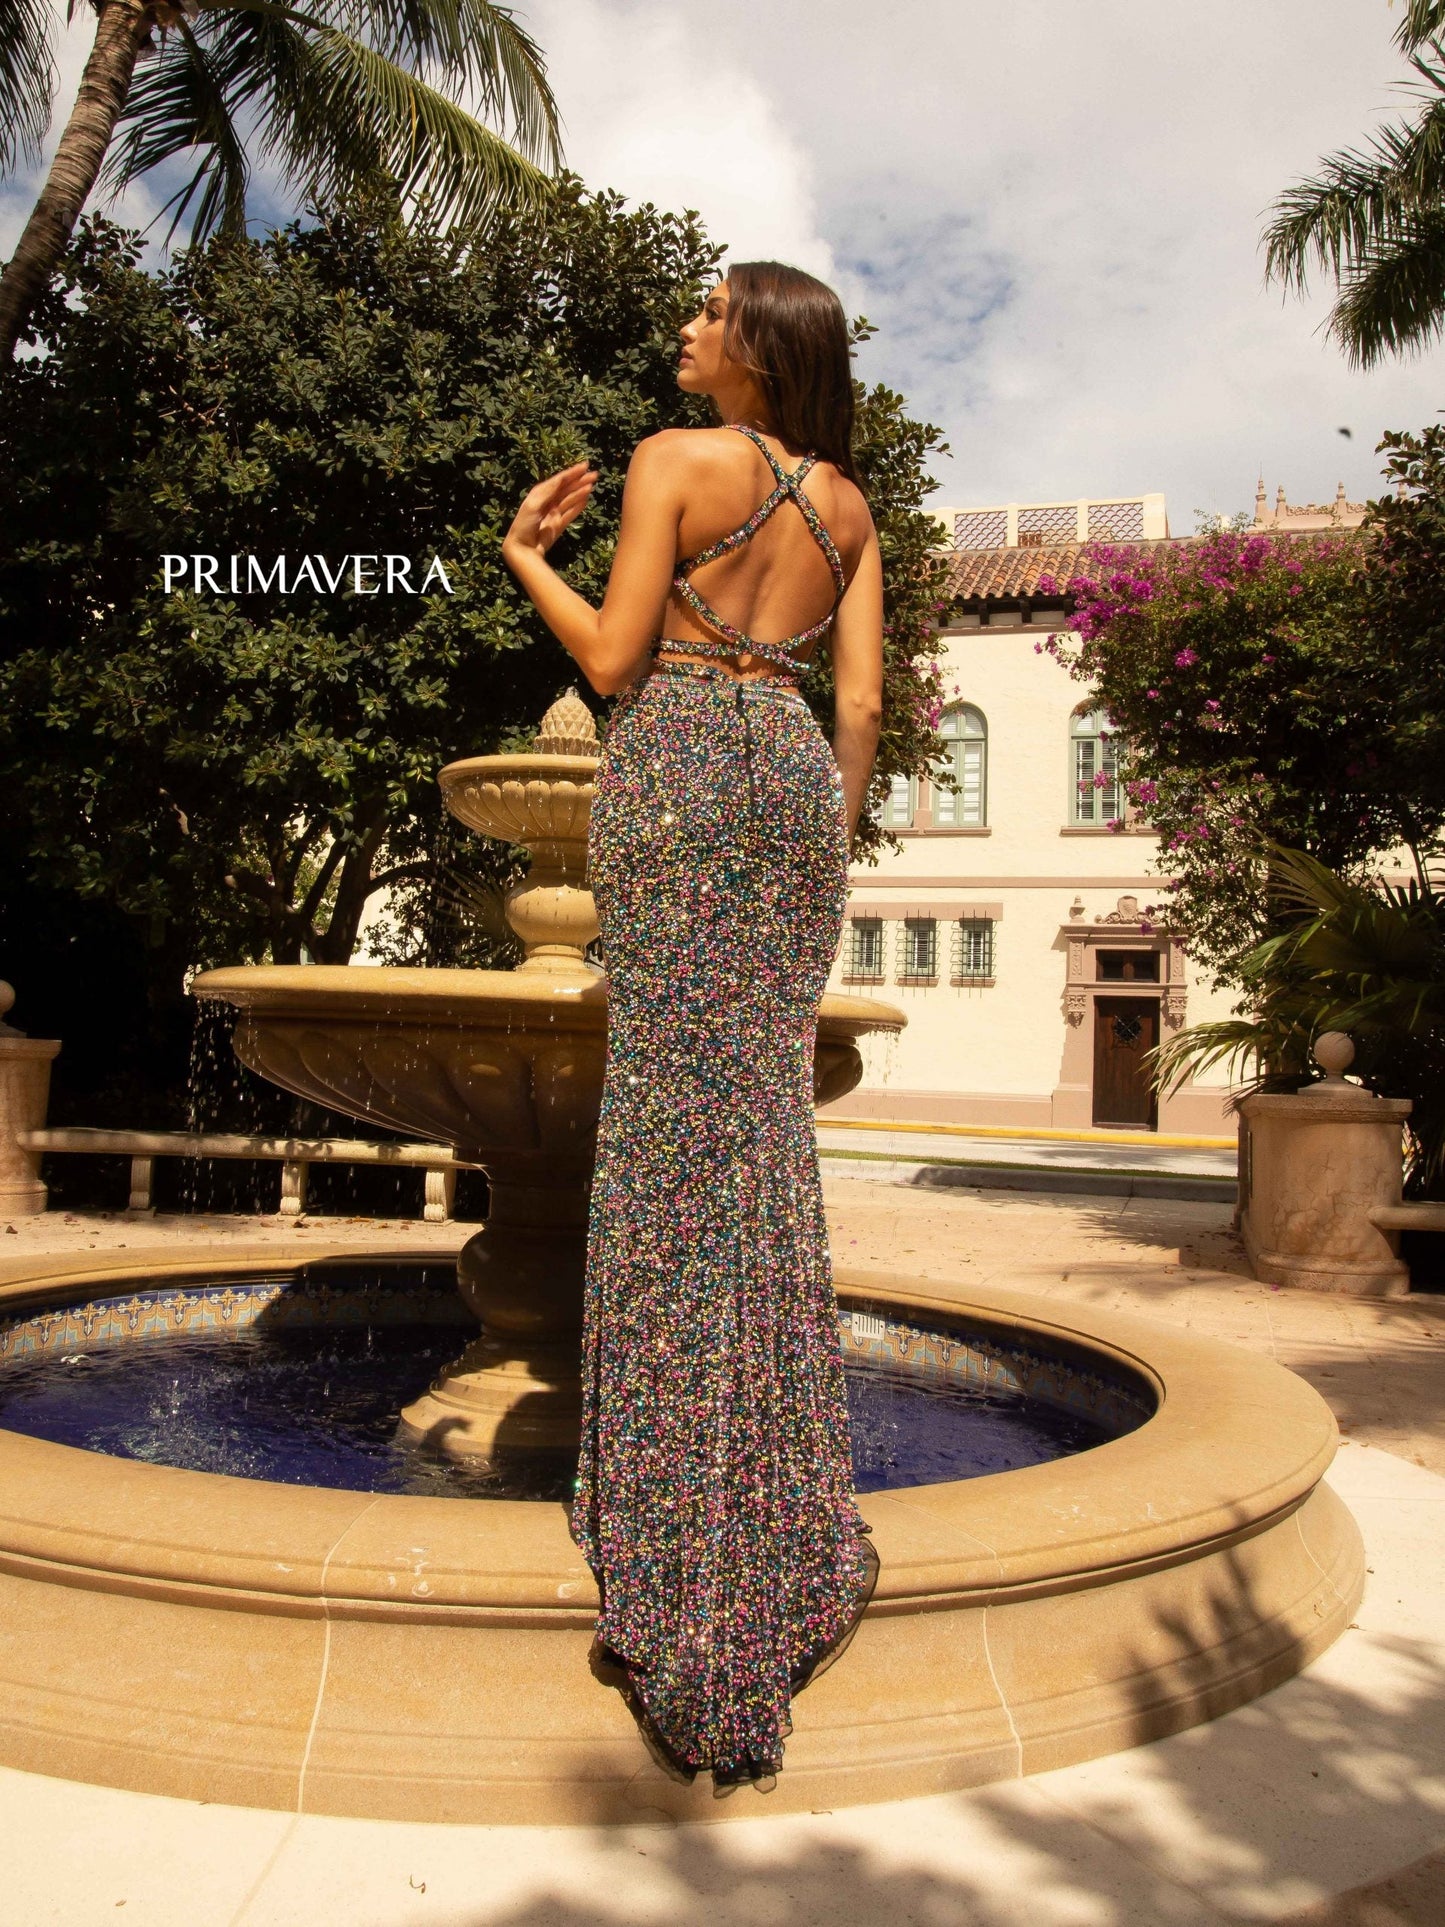 Primavera Couture 3744 Size 2 Orange Sequin Prom Dress Strappy Back V Neckline Cutouts Slit